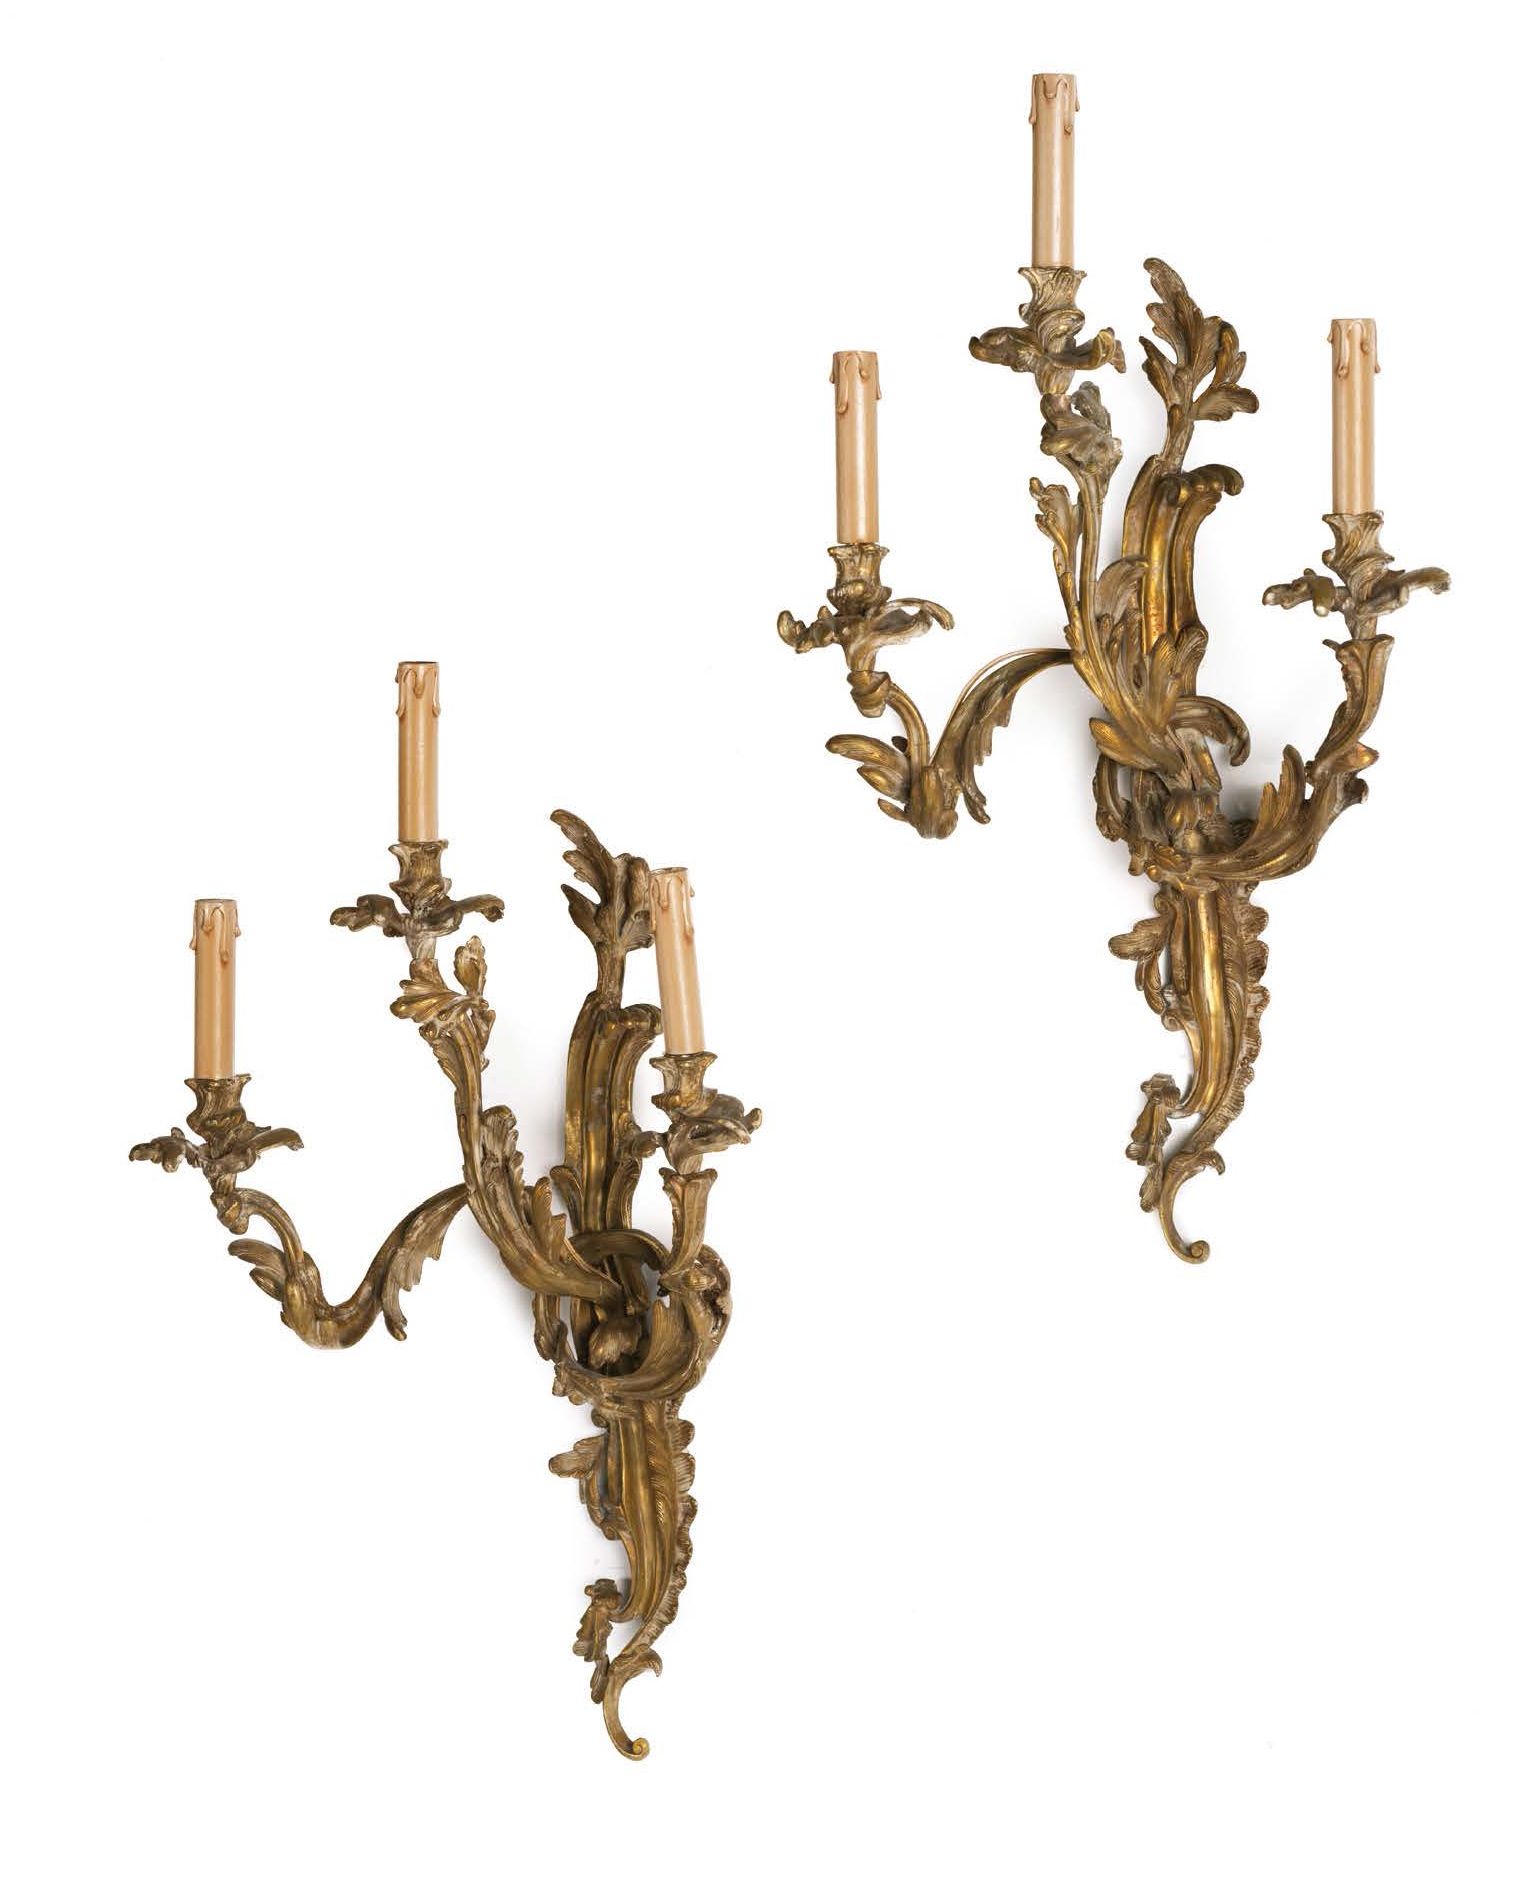 Null 一对模制和鎏金青铜的三臂壁灯。
模型上装饰有刺桐叶和花朵。
路易十五风格的美丽模型。
高_66厘米，宽_46厘米